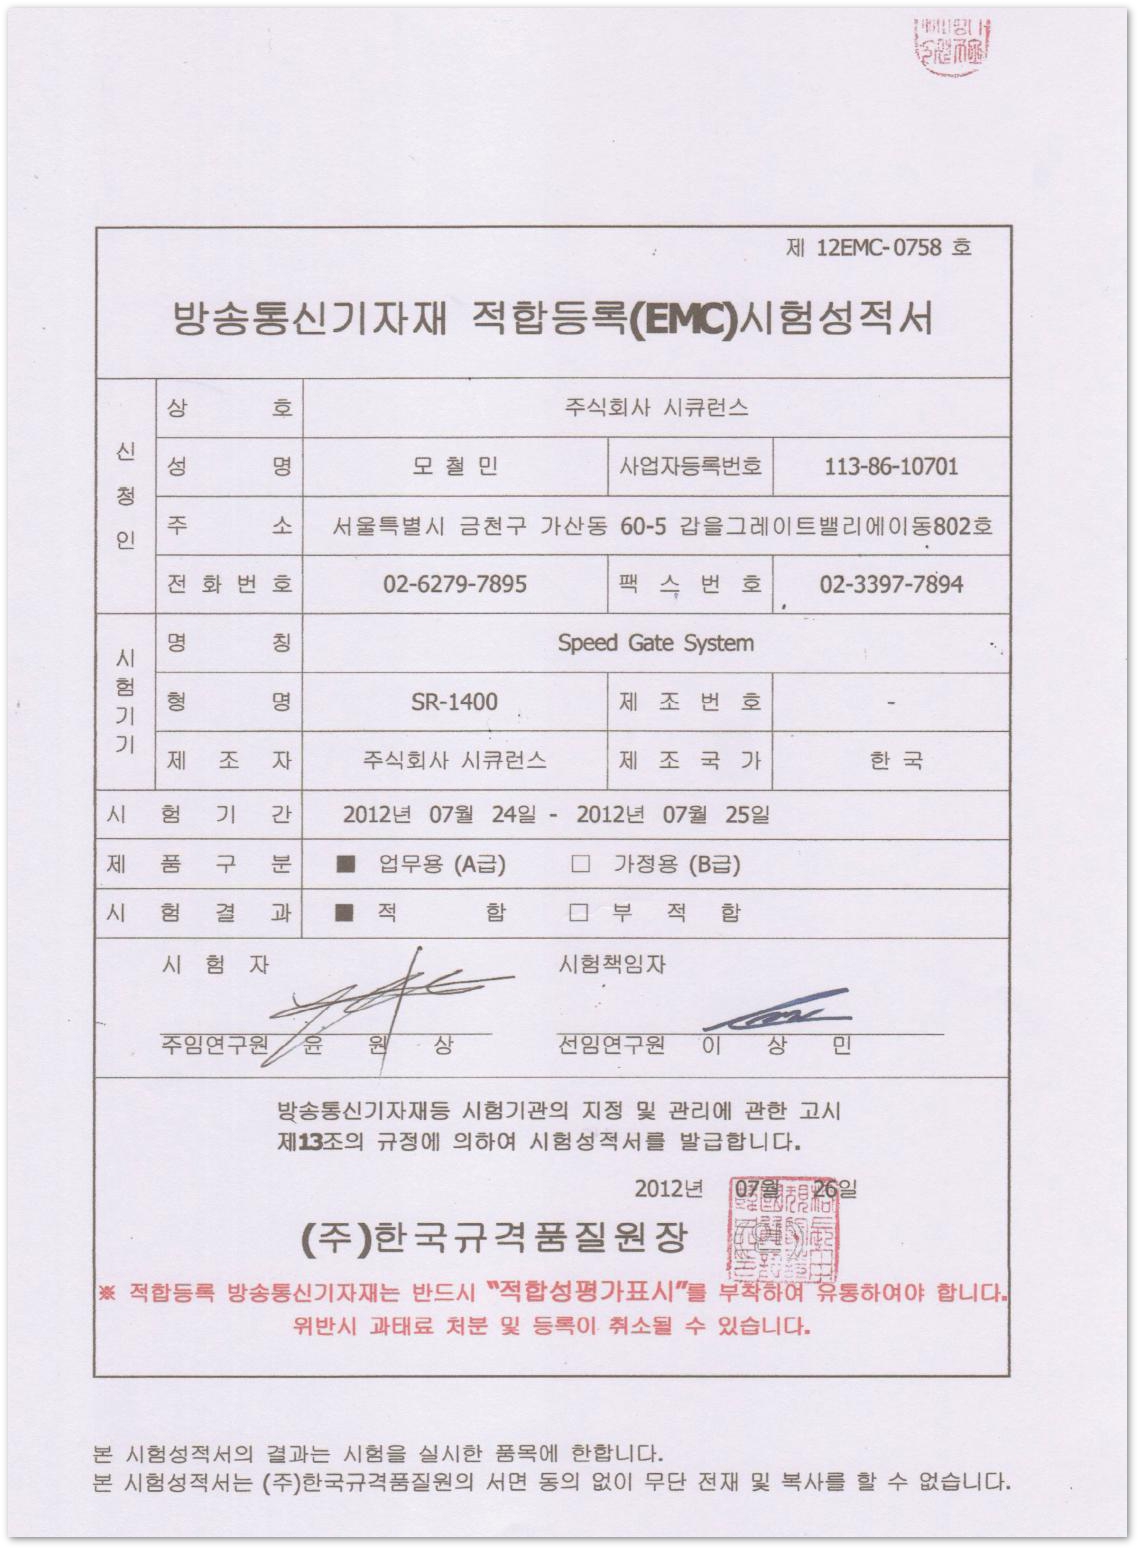 我公司的闸机通道设备的韩国EMC通讯测试单